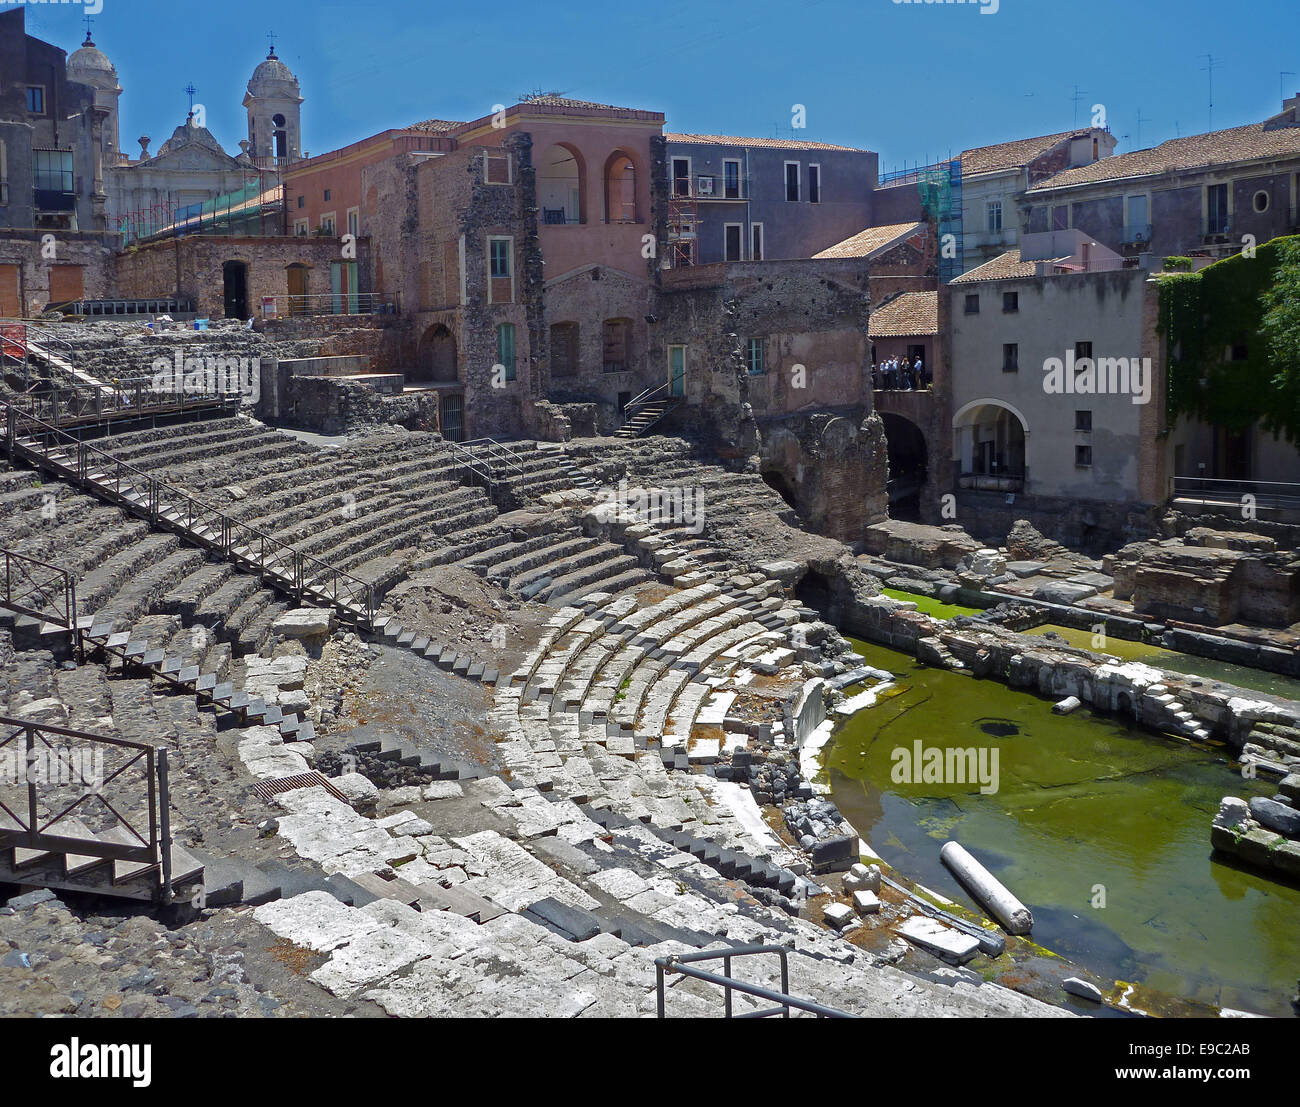 L'amphithéâtre romain est situé sur le bord de l'ancienne acropole. Il se dresse sur les fondations d'un théâtre grec. Bon état, les chambres sont au sous-sol. Un flux fournit aujourd'hui l'eau a été nécessaire pour les jeux d'eau. - Juin 2014 Banque D'Images